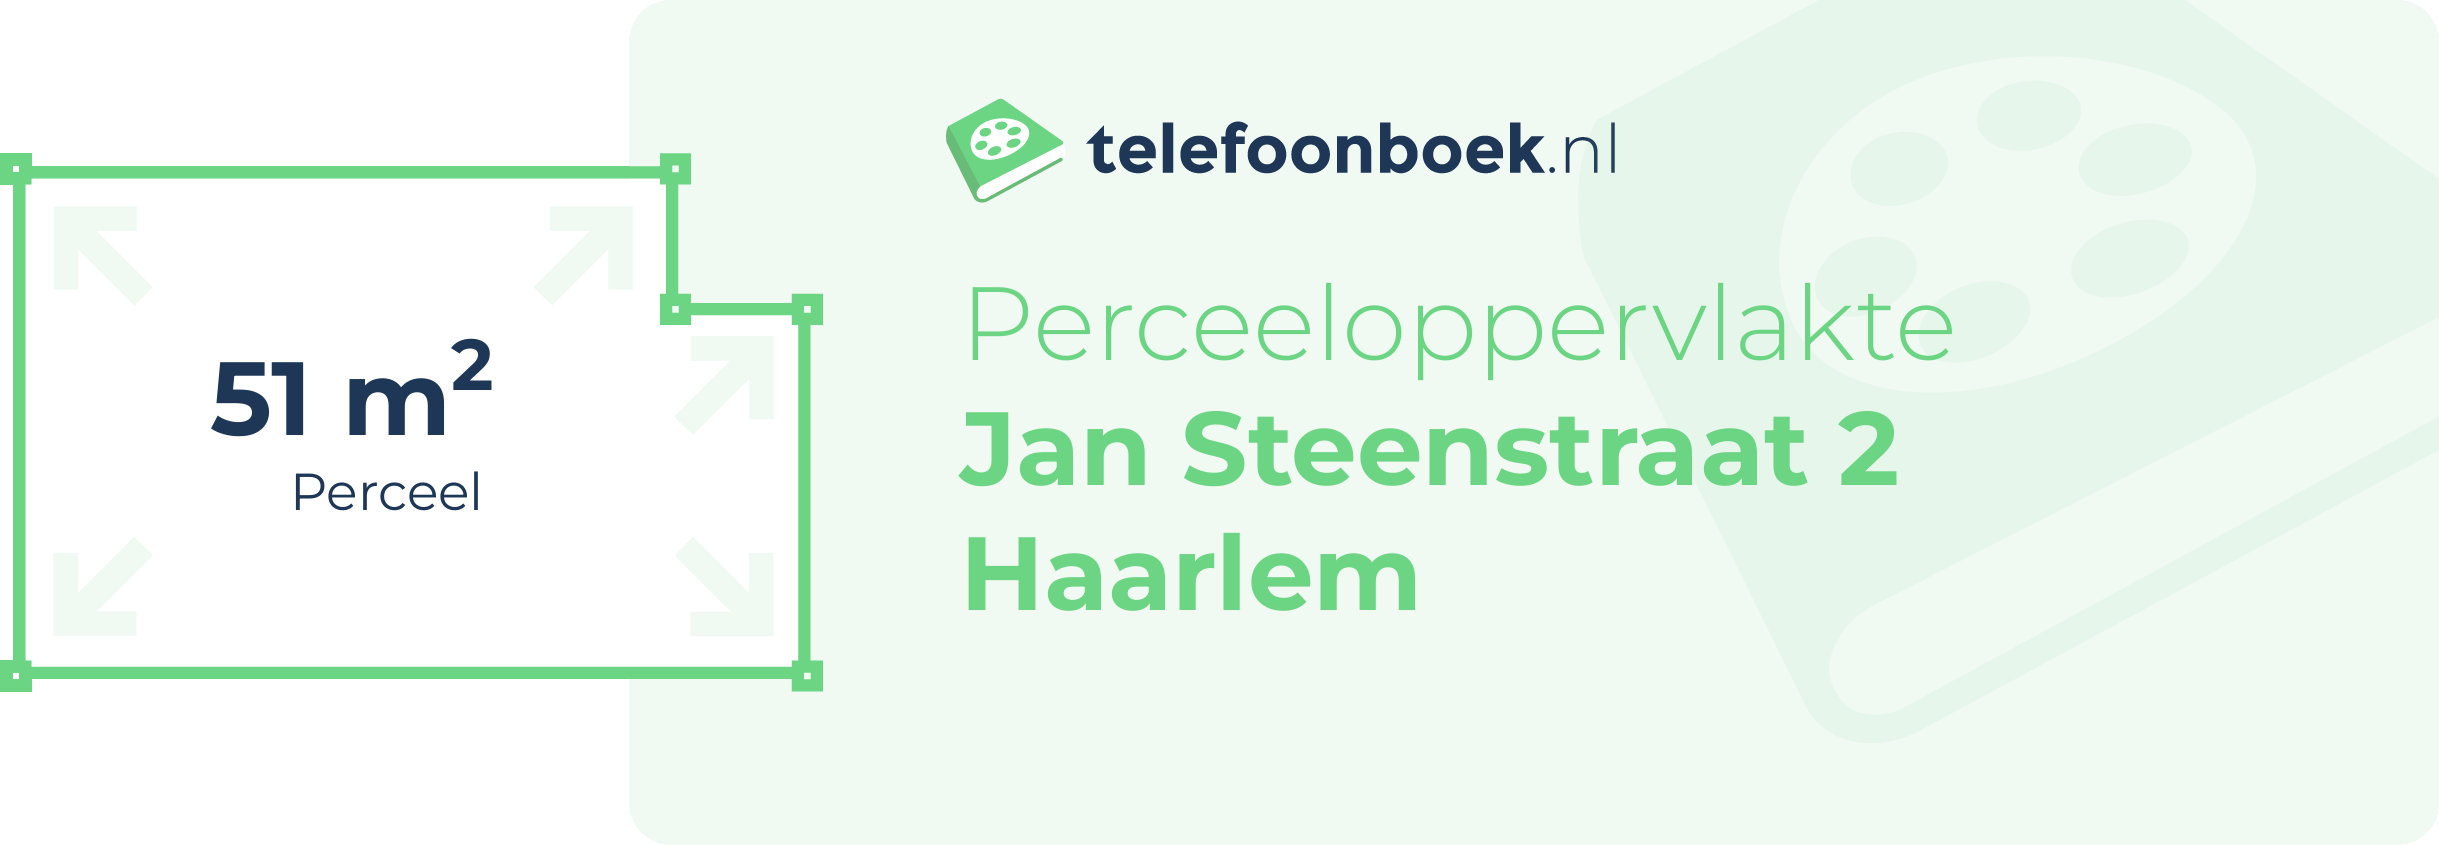 Perceeloppervlakte Jan Steenstraat 2 Haarlem